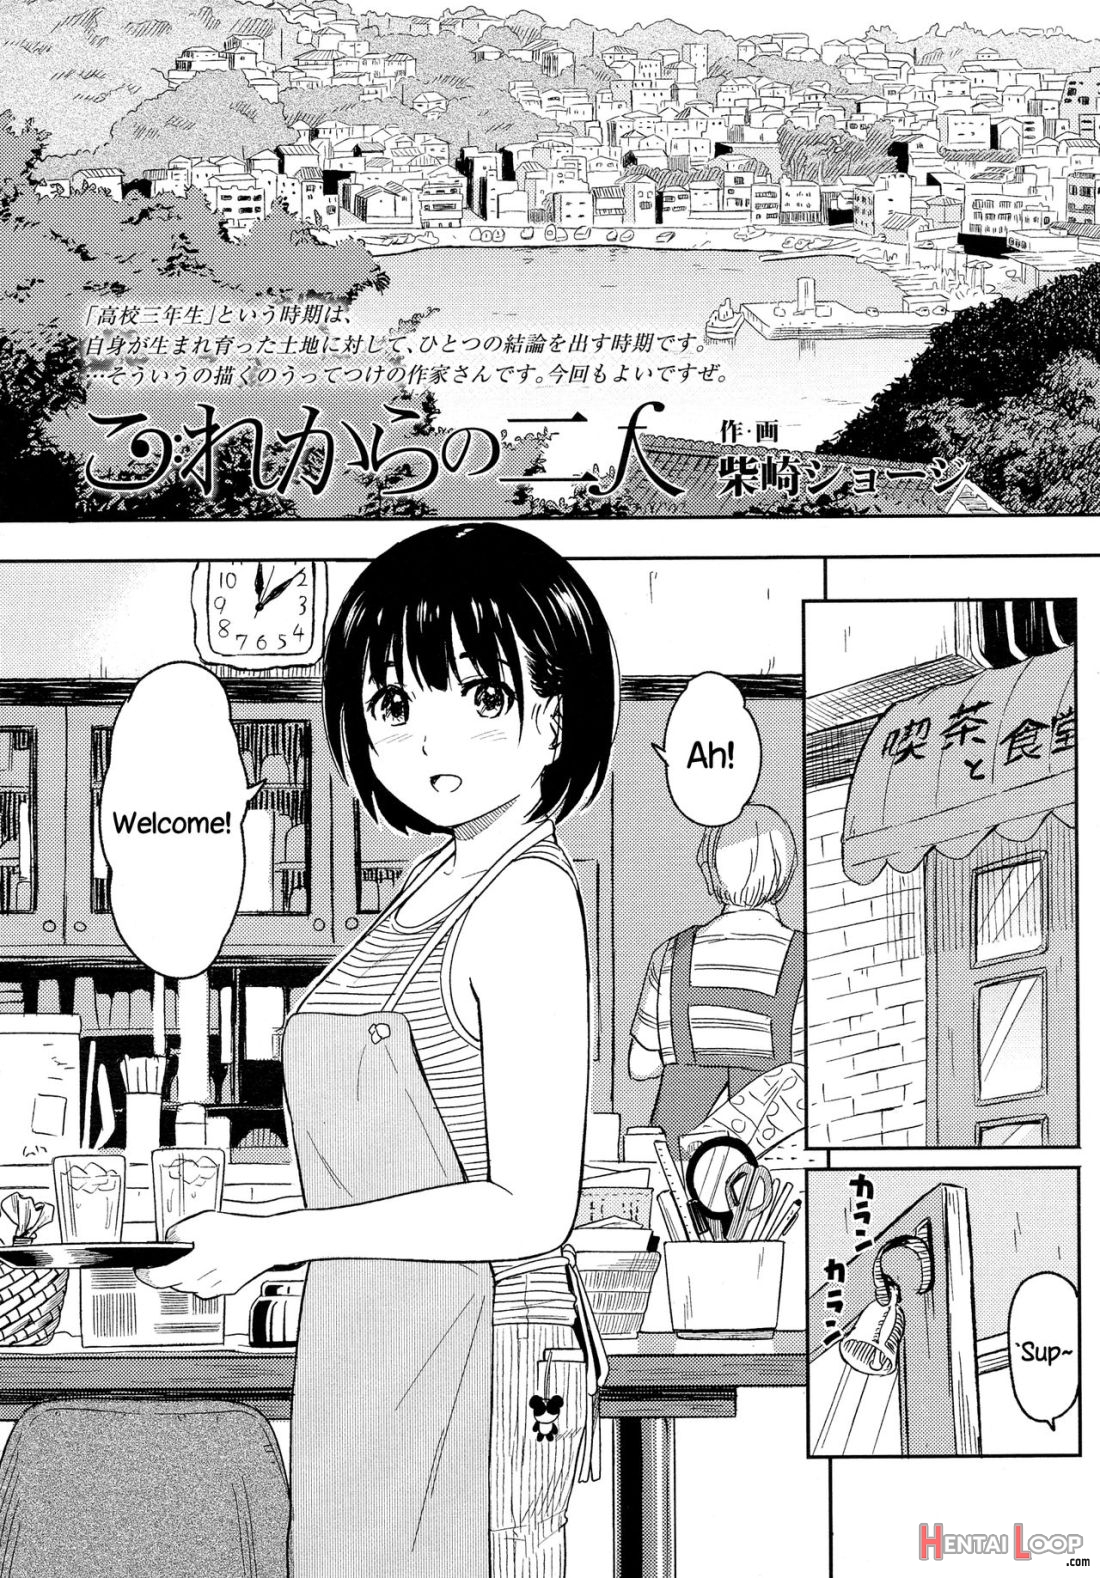 Korekara No Futari page 2